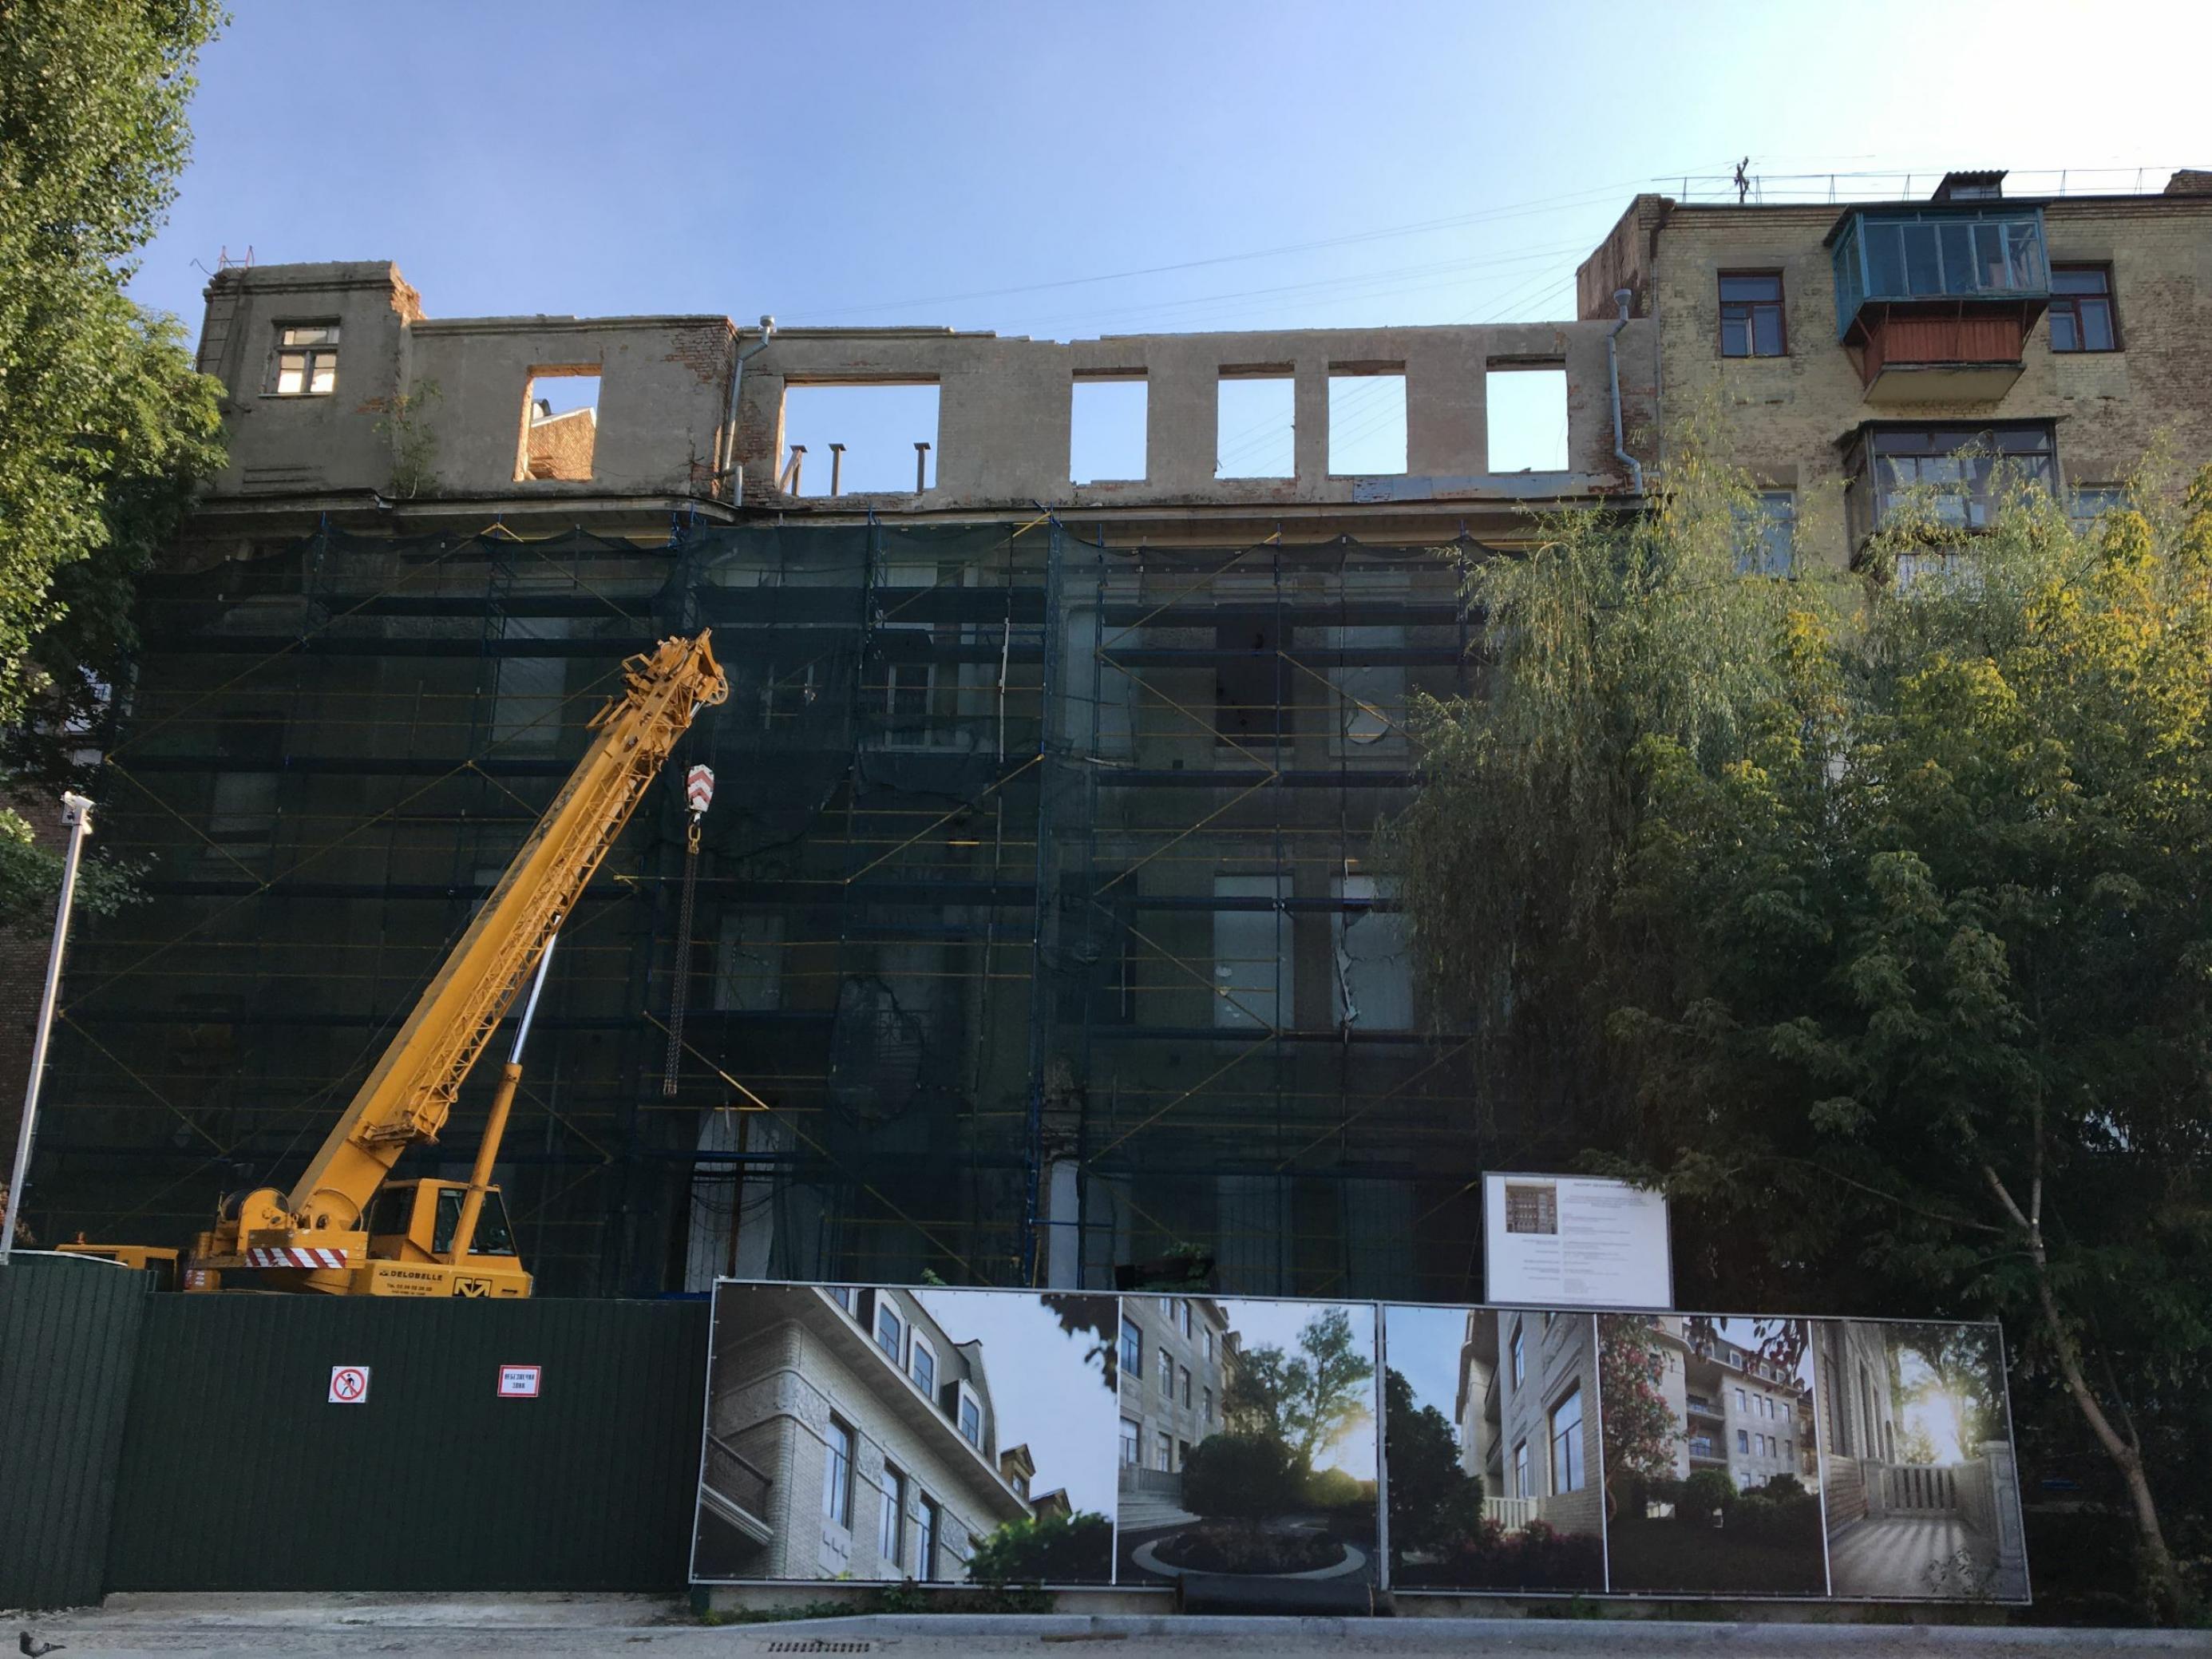 Mit HIlfe eines Baufahrzeugs wird ein marodes Gebäude in der ukrainischen Hauptstadt Kiew saniert. Plakate zeigen, wie das Haus später aussehen soll.